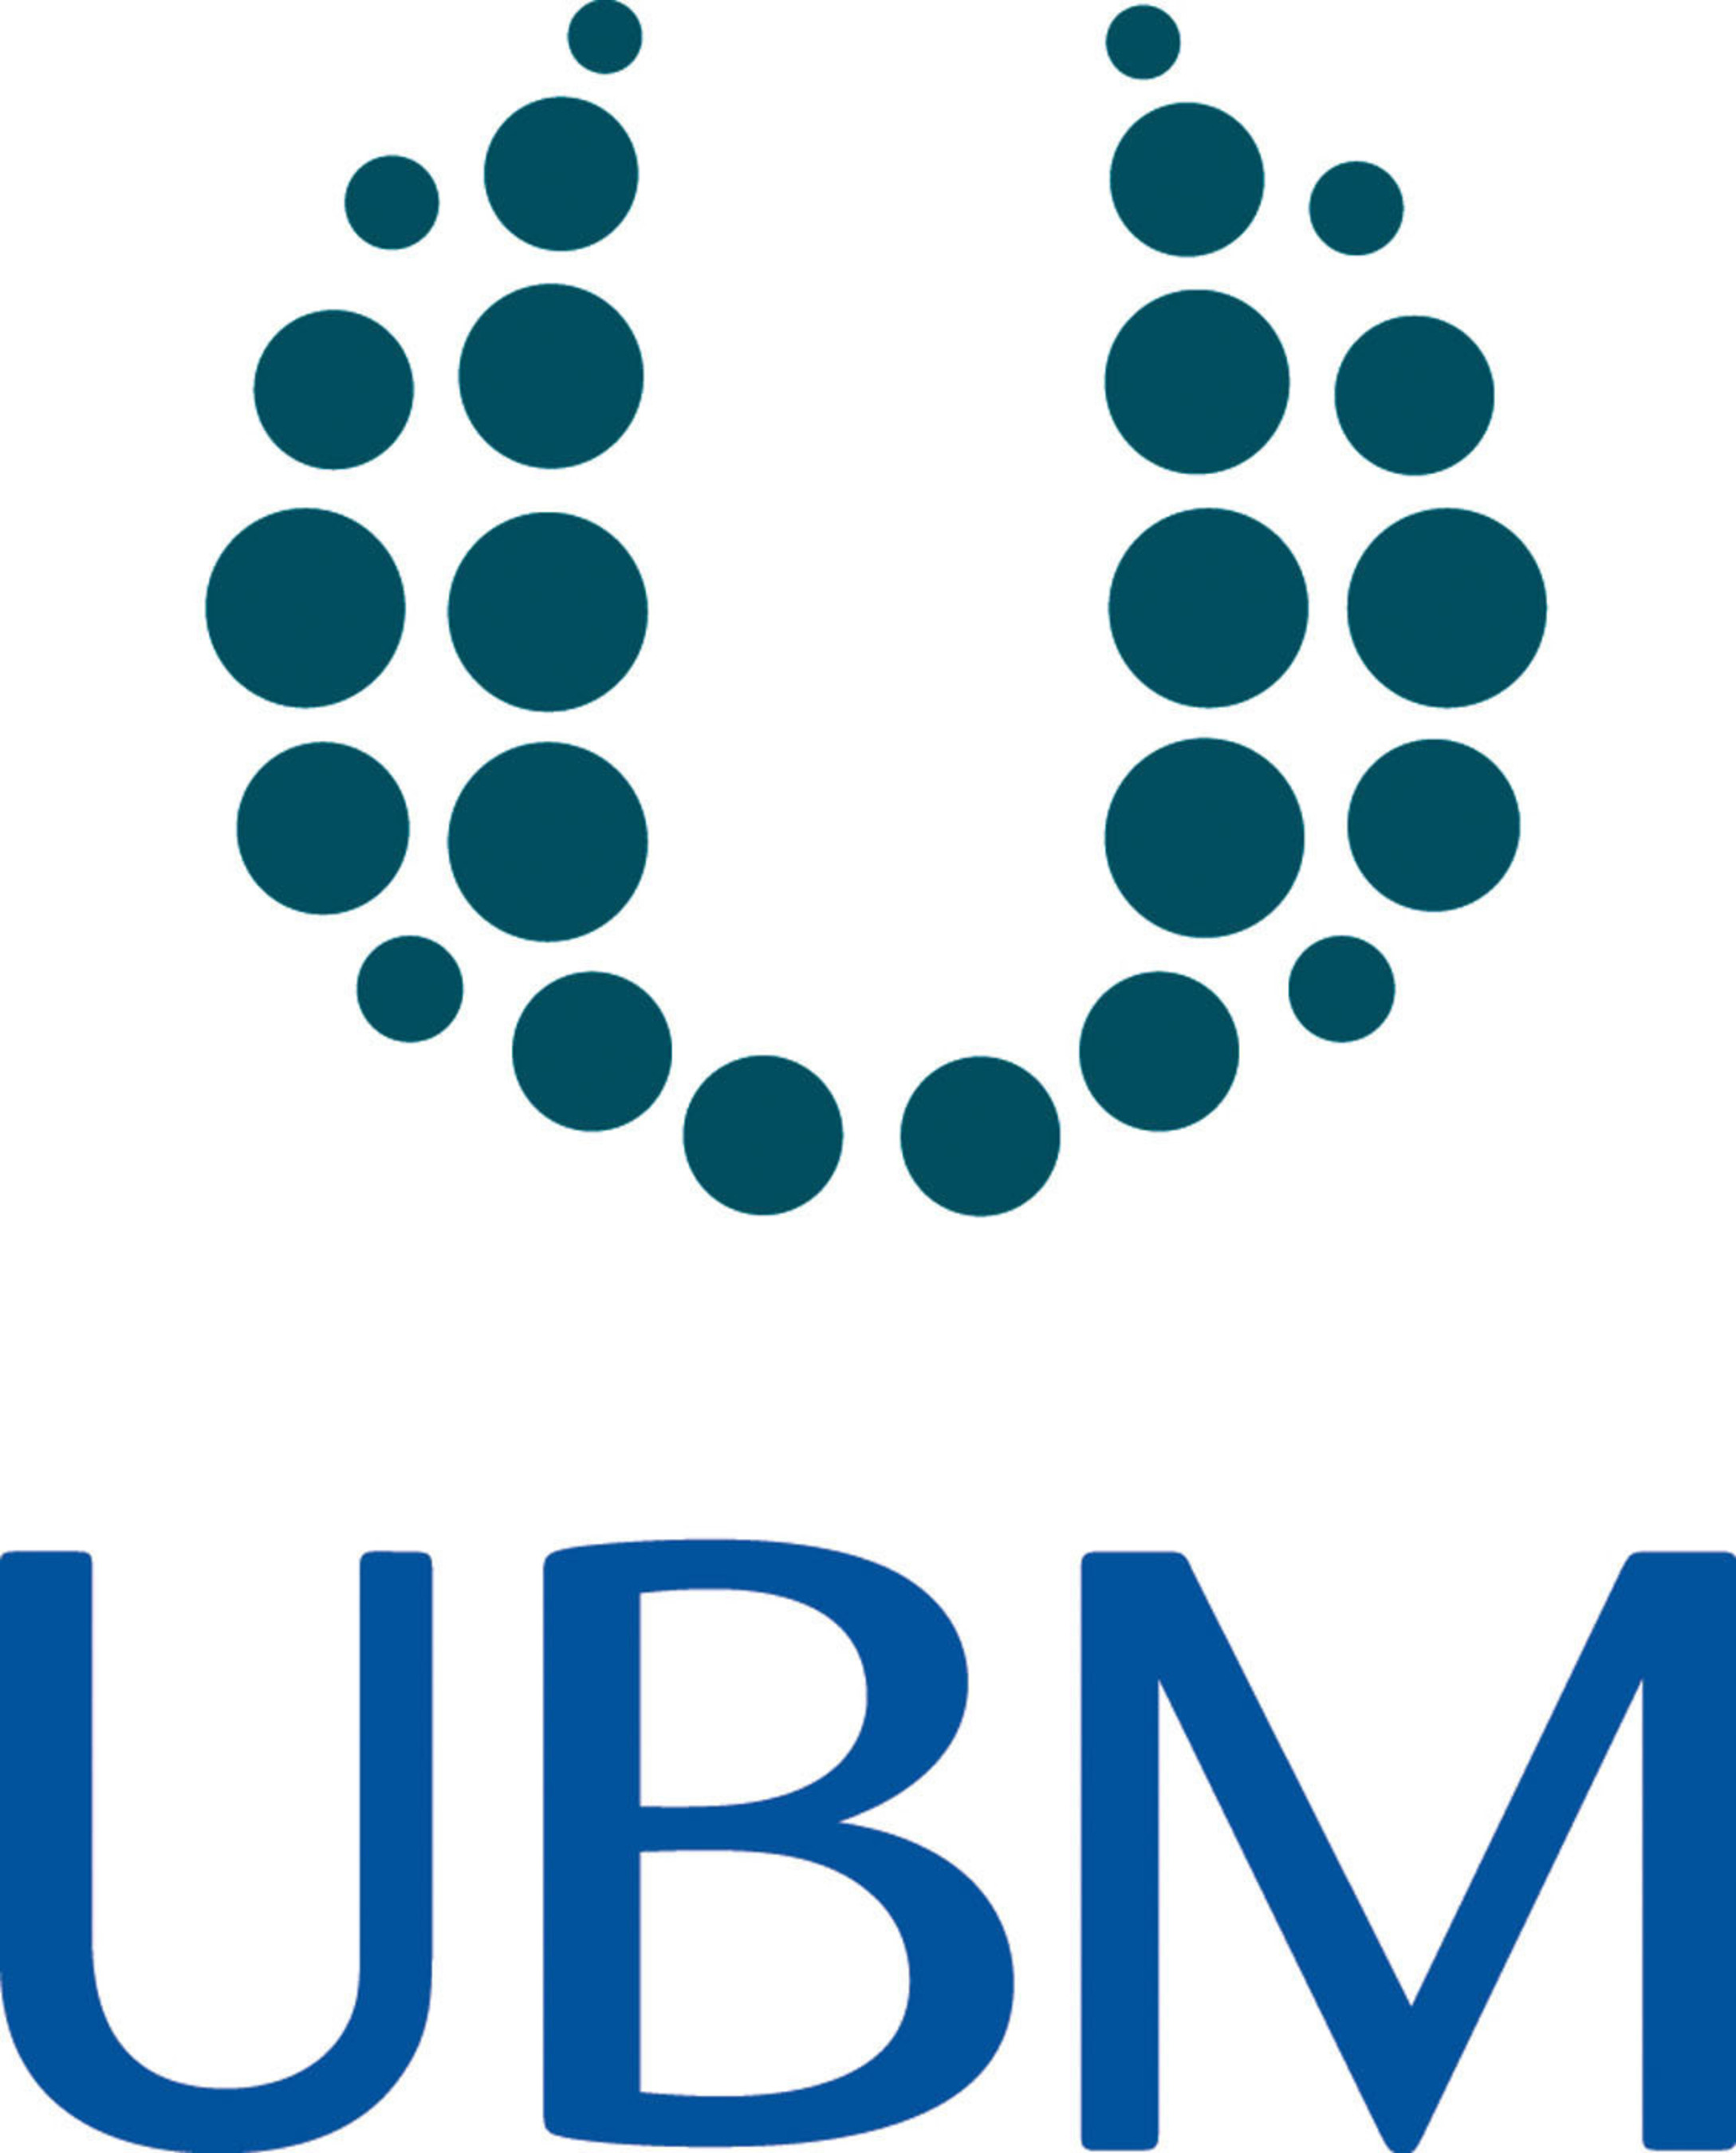 "UBM logo."